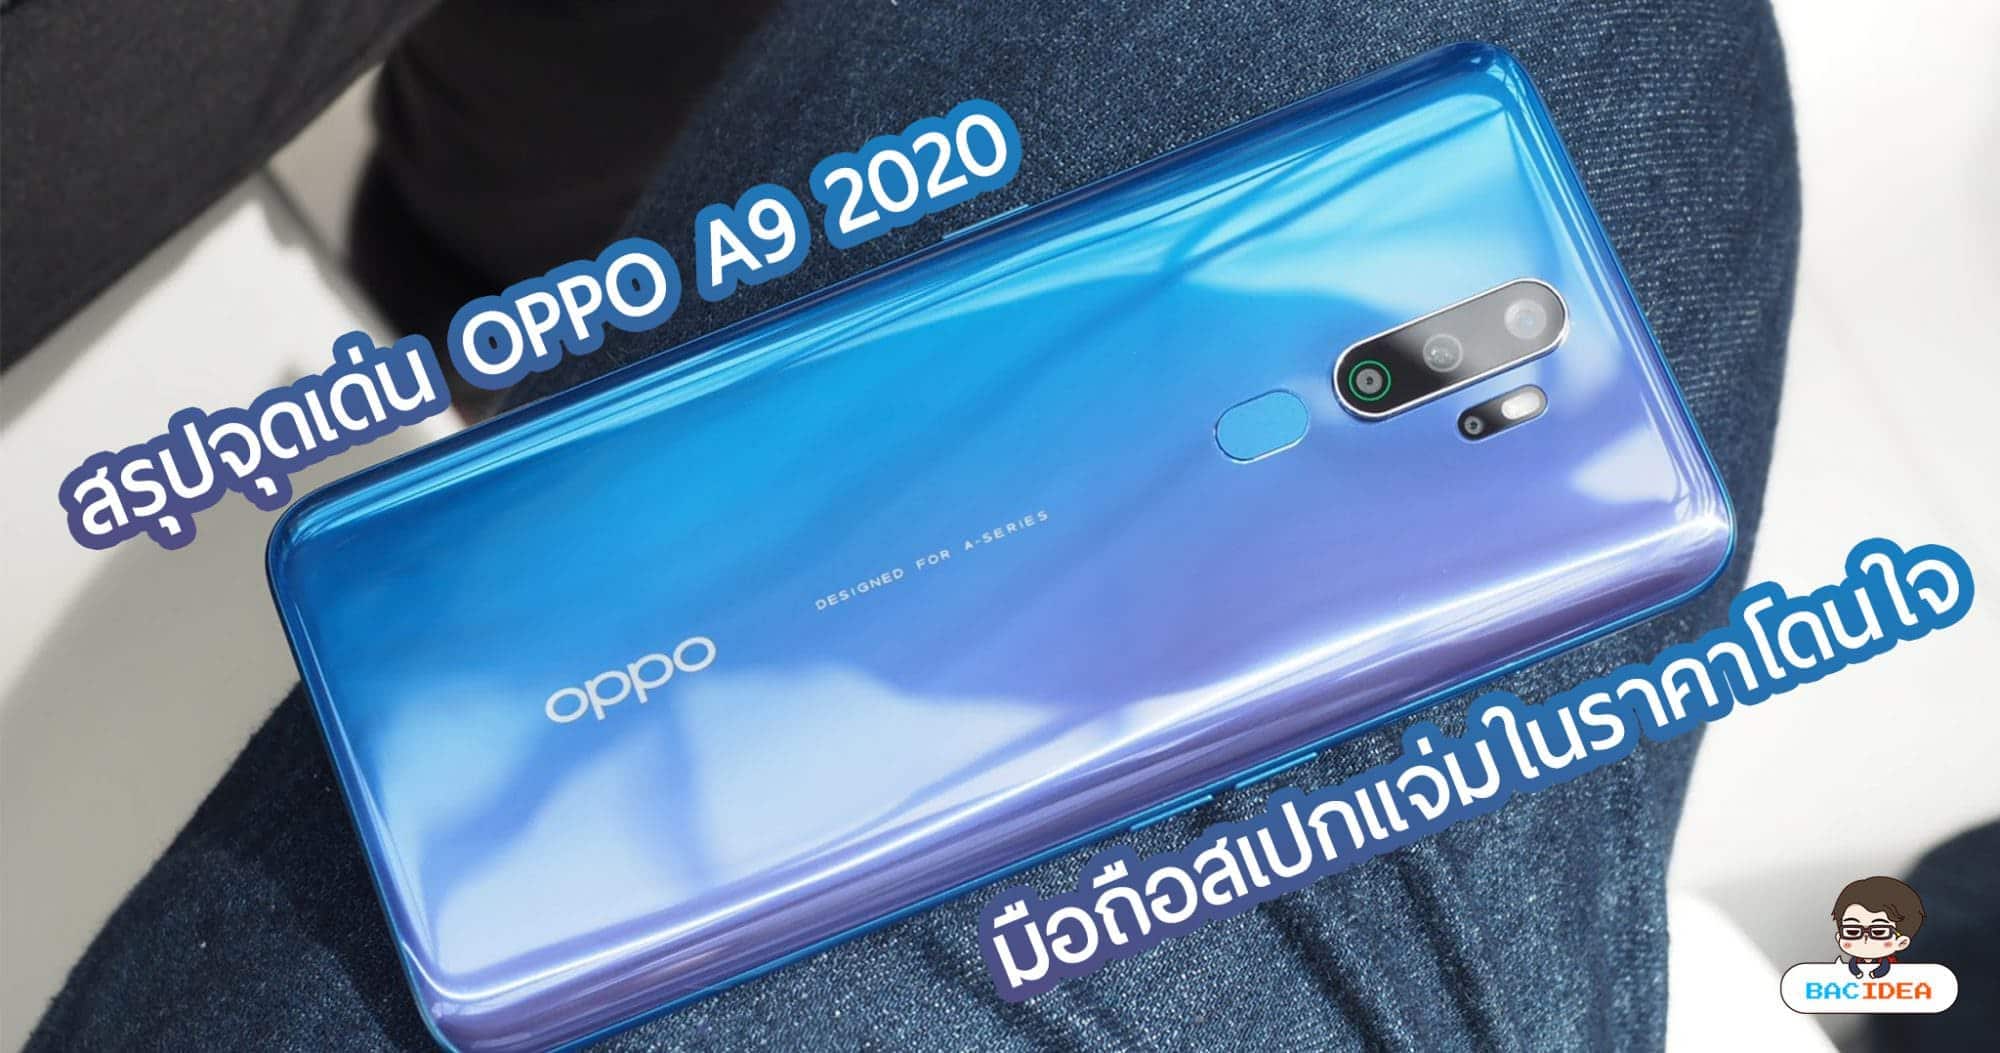 สรุปจุดเด่น OPPO A9 2020 มือถือสเปกแจ่มในราคาโดนใจ 1